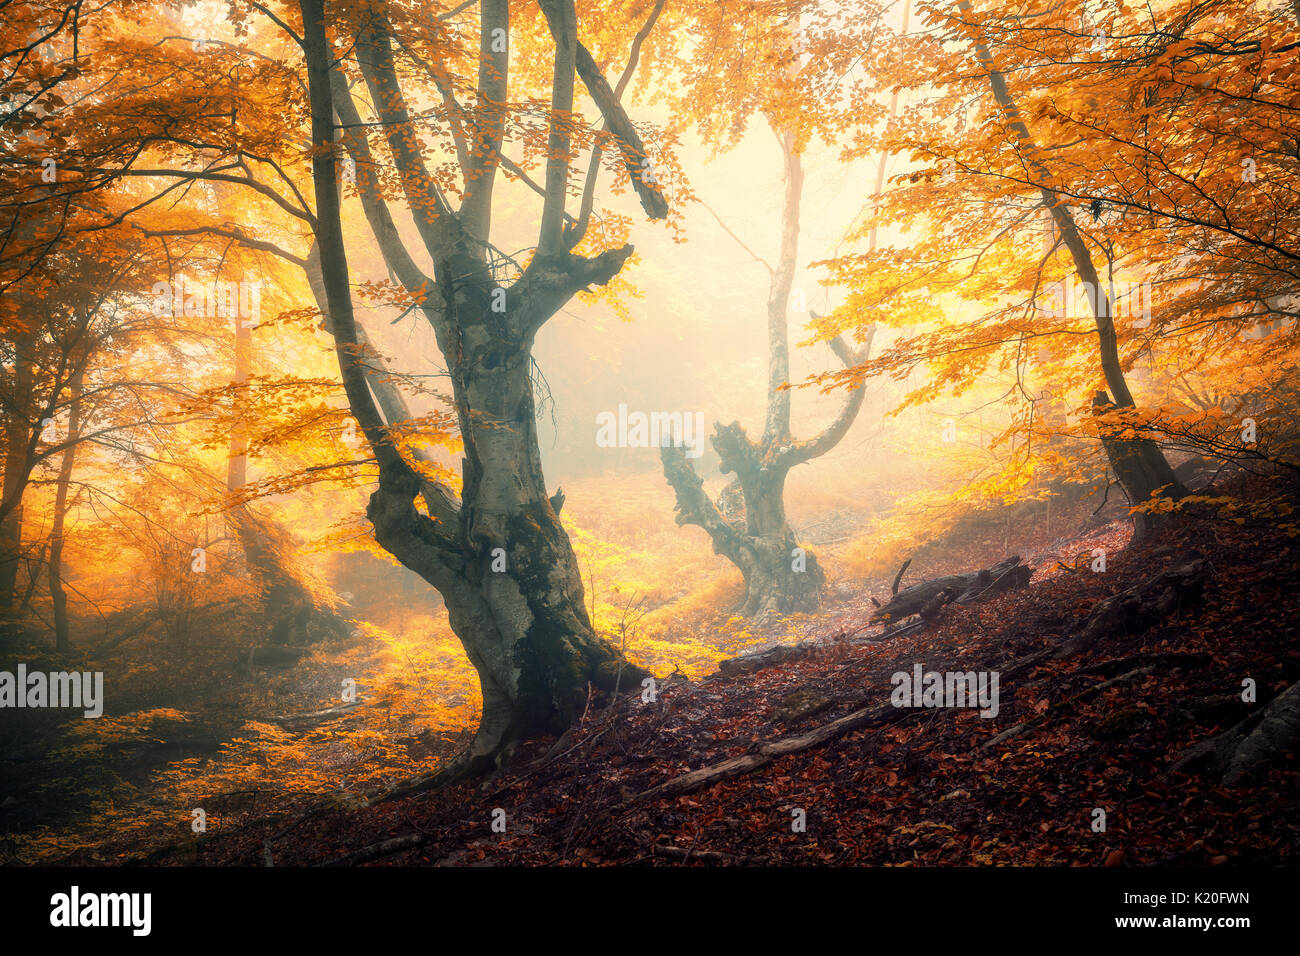 Herbst Wald im Nebel. Herbst Wald. Die verzauberte Herbst Wald im Nebel am Abend. Alter Baum. Landschaft mit Bäumen, bunte orange und rot Laub und f Stockfoto